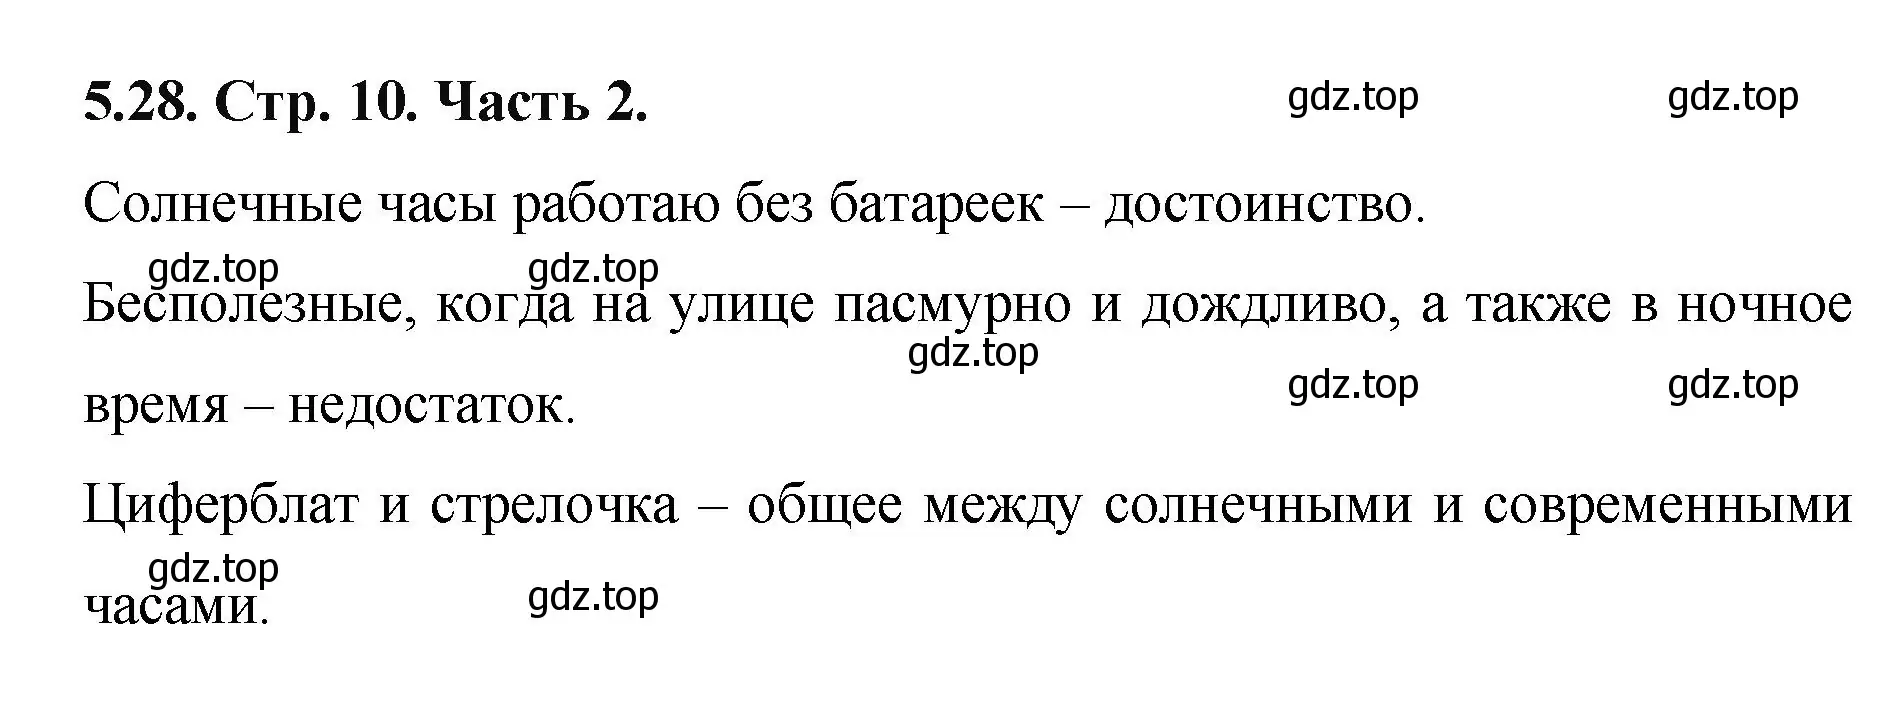 Решение номер 5.28 (страница 10) гдз по математике 5 класс Виленкин, Жохов, учебник 2 часть